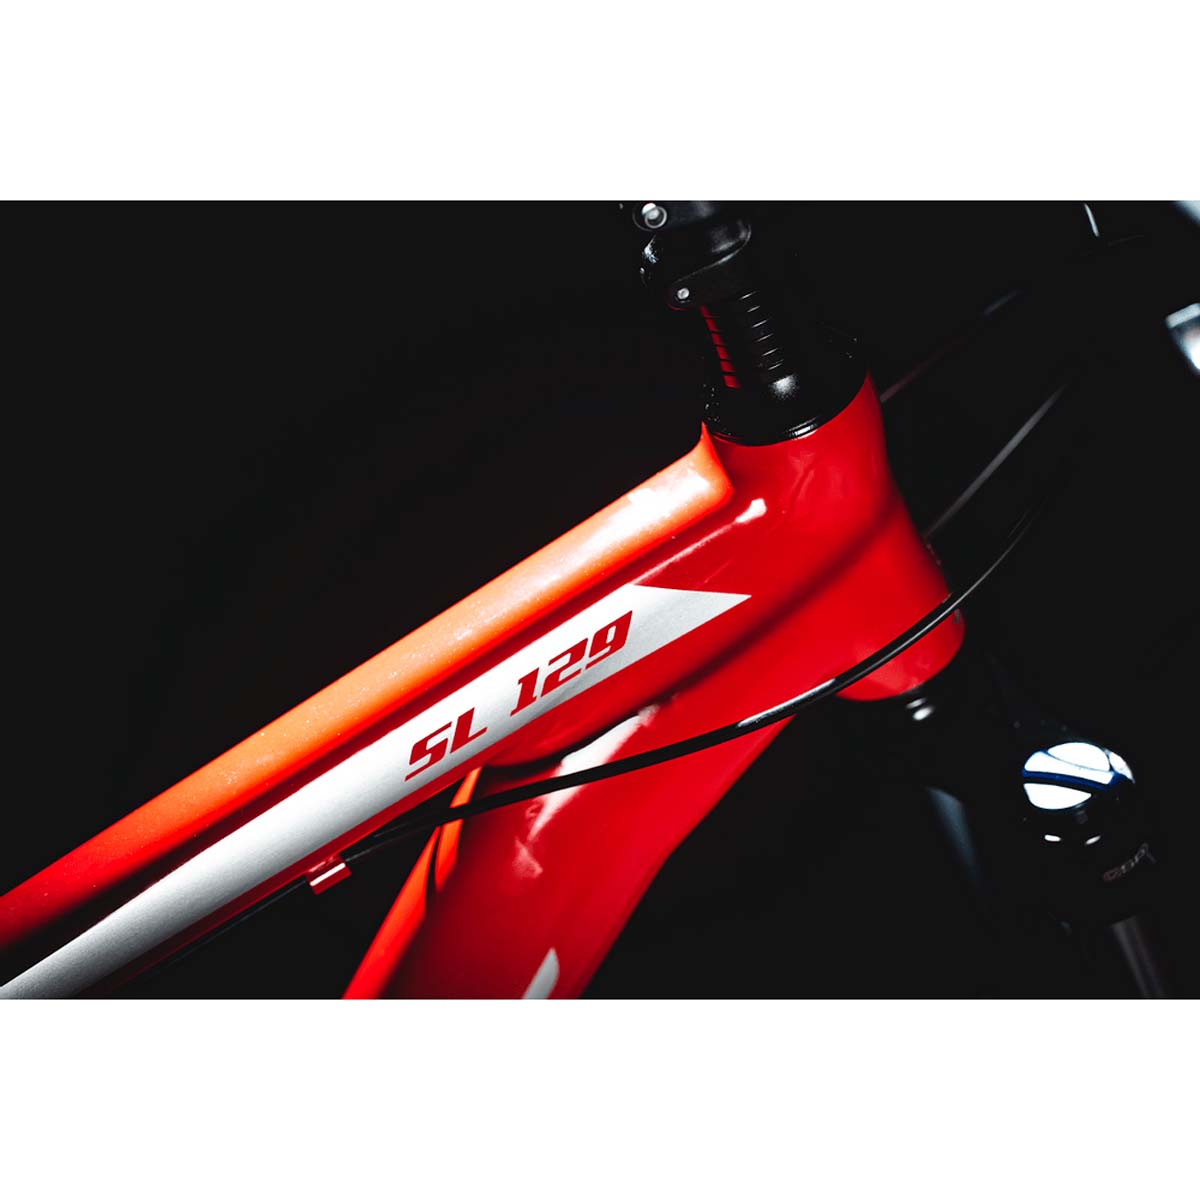 Bicicleta Soul SL 129 Aro 29 21V Shimano Tourney Degrade Vermelha e Preta 21